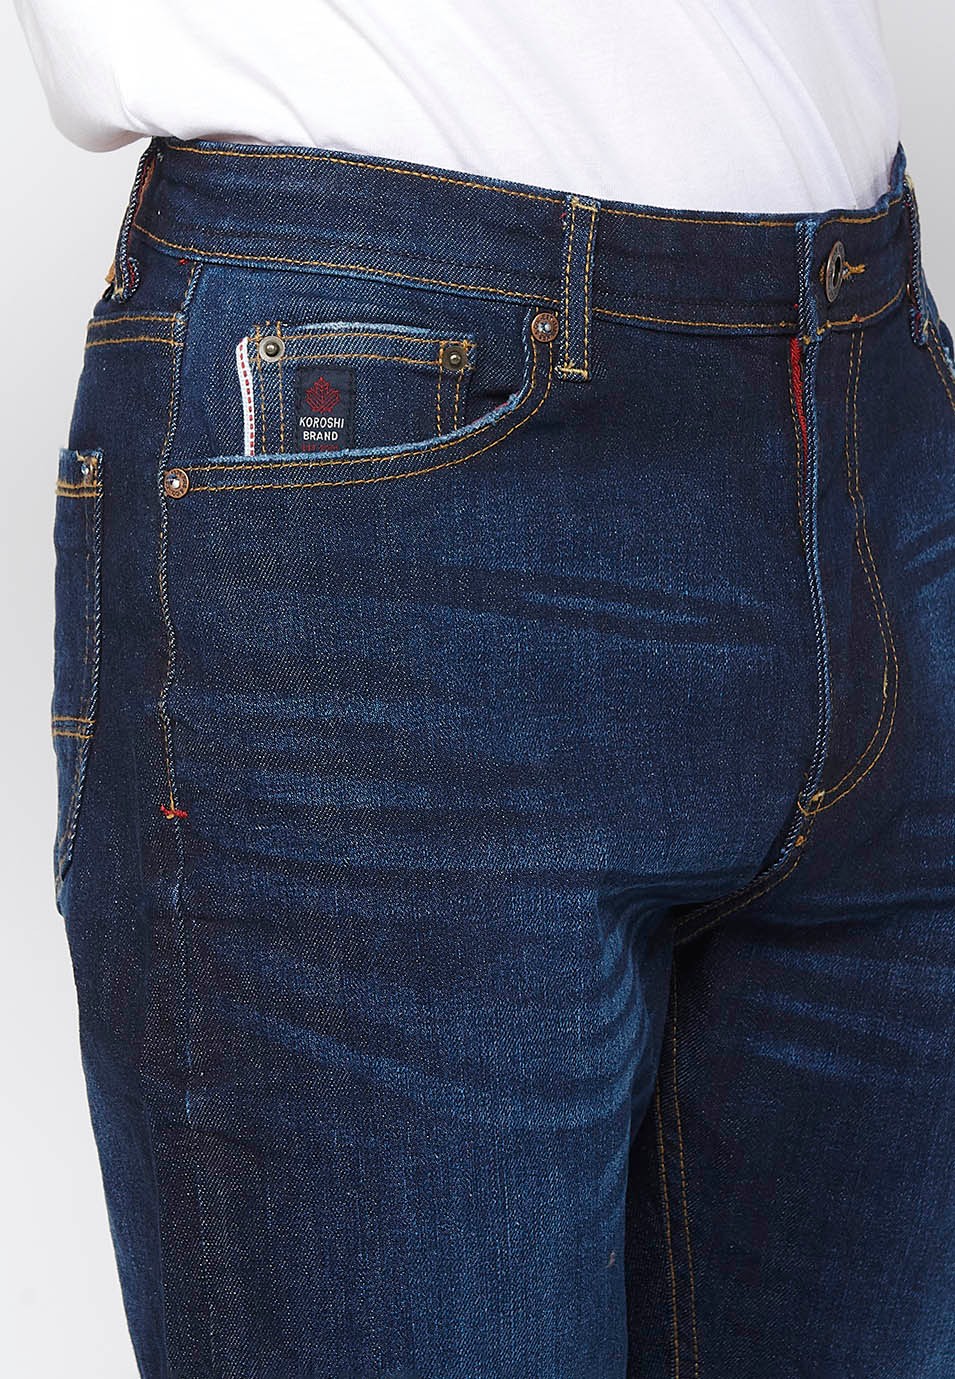 Pantalons denim Straigth comfort fit amb tancament davanter amb cremallera color Blau per a Home